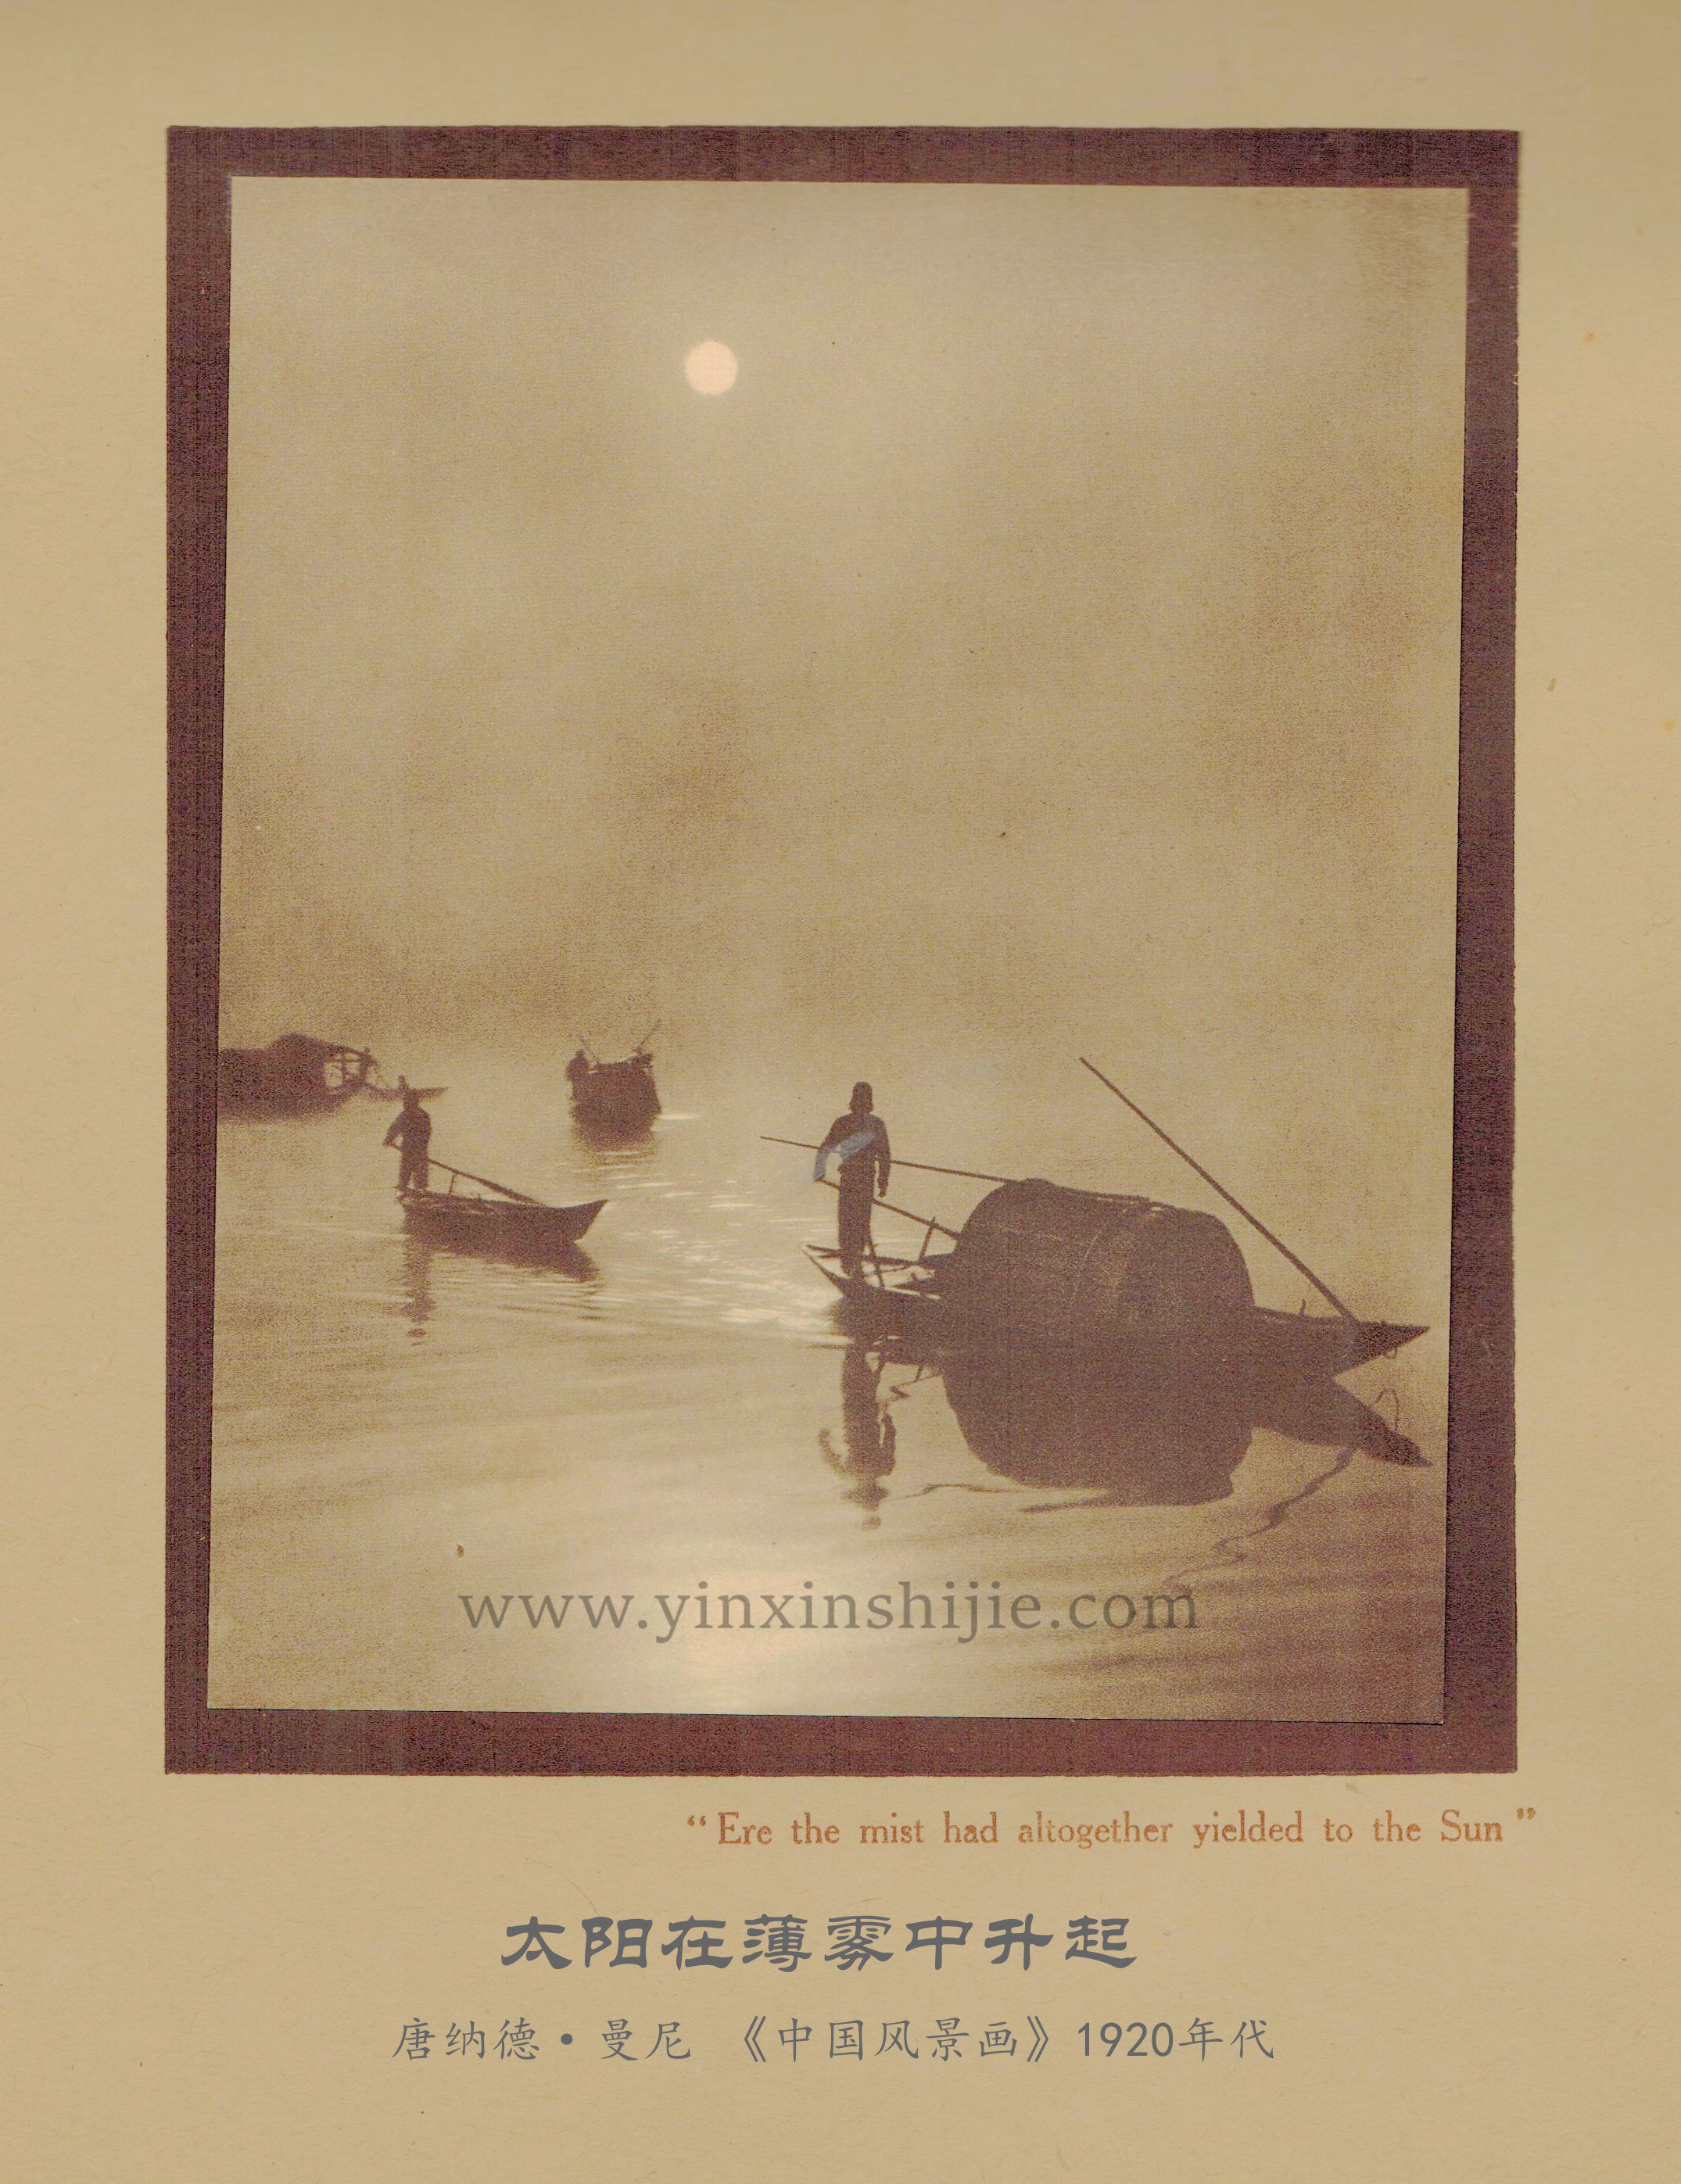 太阳在薄雾中升起-唐纳德·曼尼《中国风景画》1920年代